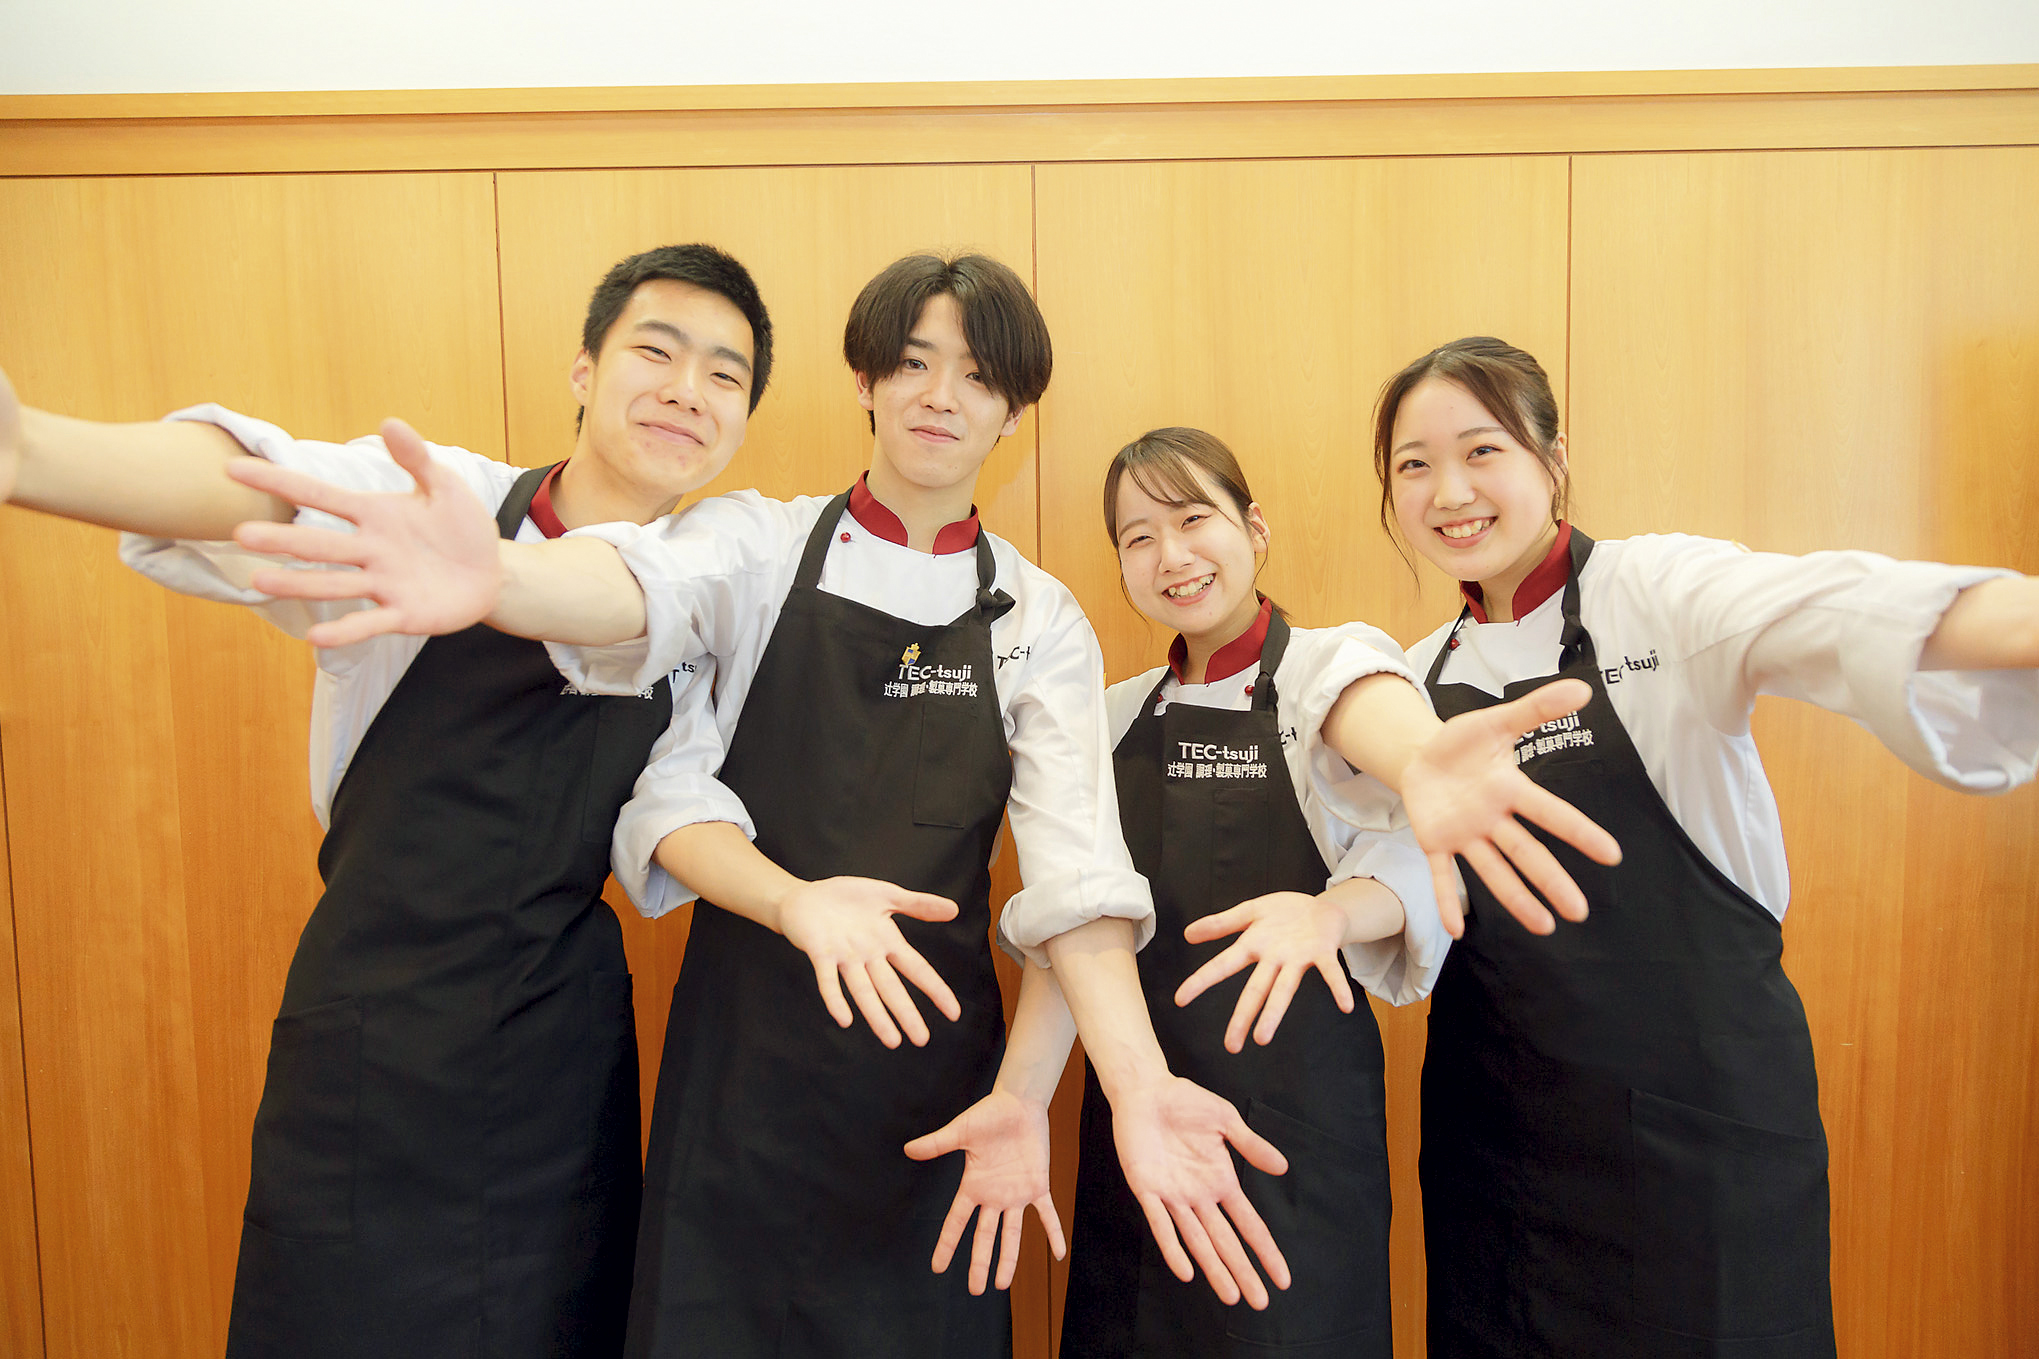 辻学園　調理・製菓専門学校(Tsuji Gakuen Culinary & Confectionary College) Features of school 2